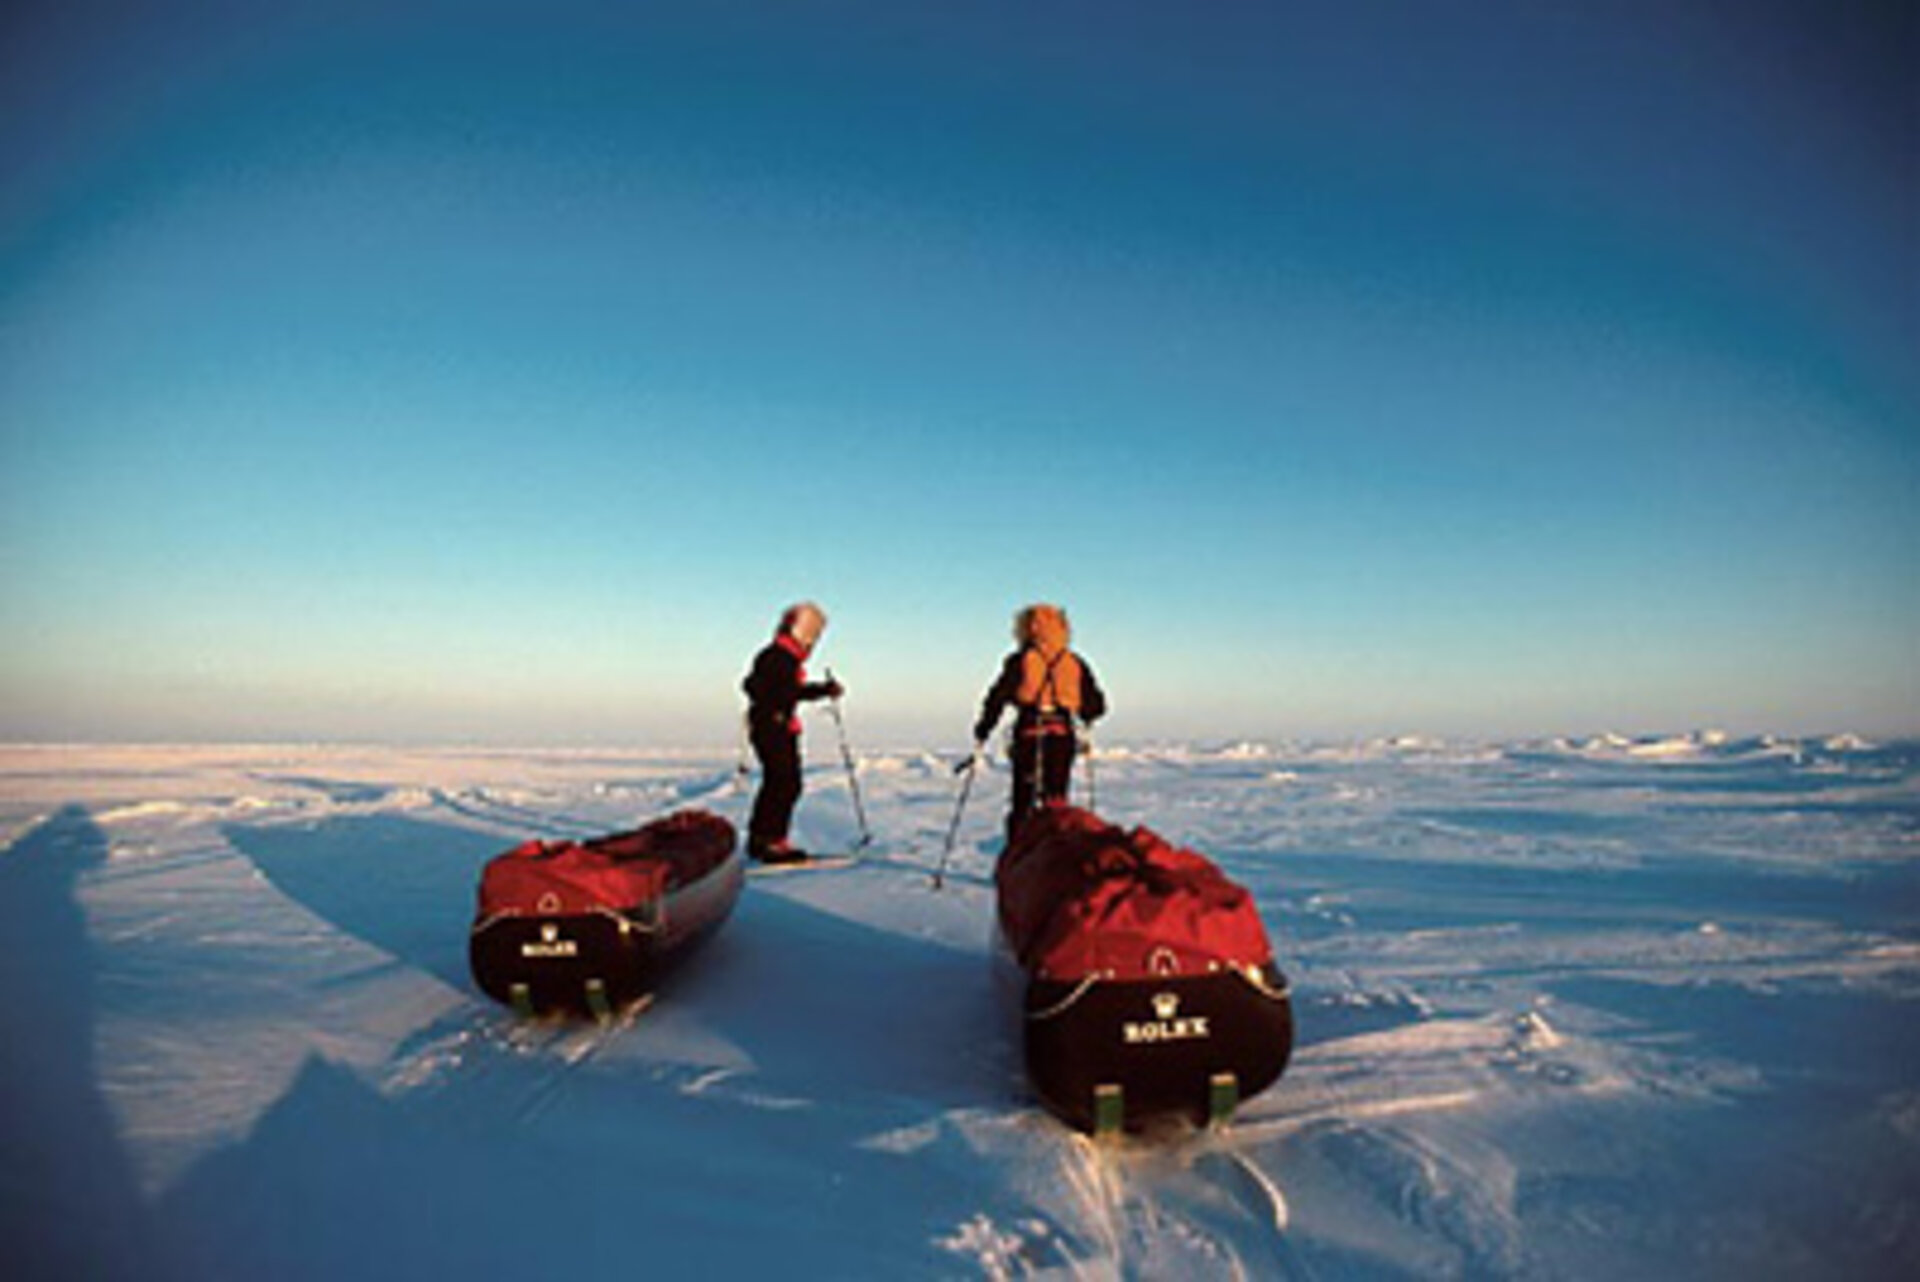 Prêts pour l’odyssée de la glace dans l’immensité de l’Arctique!